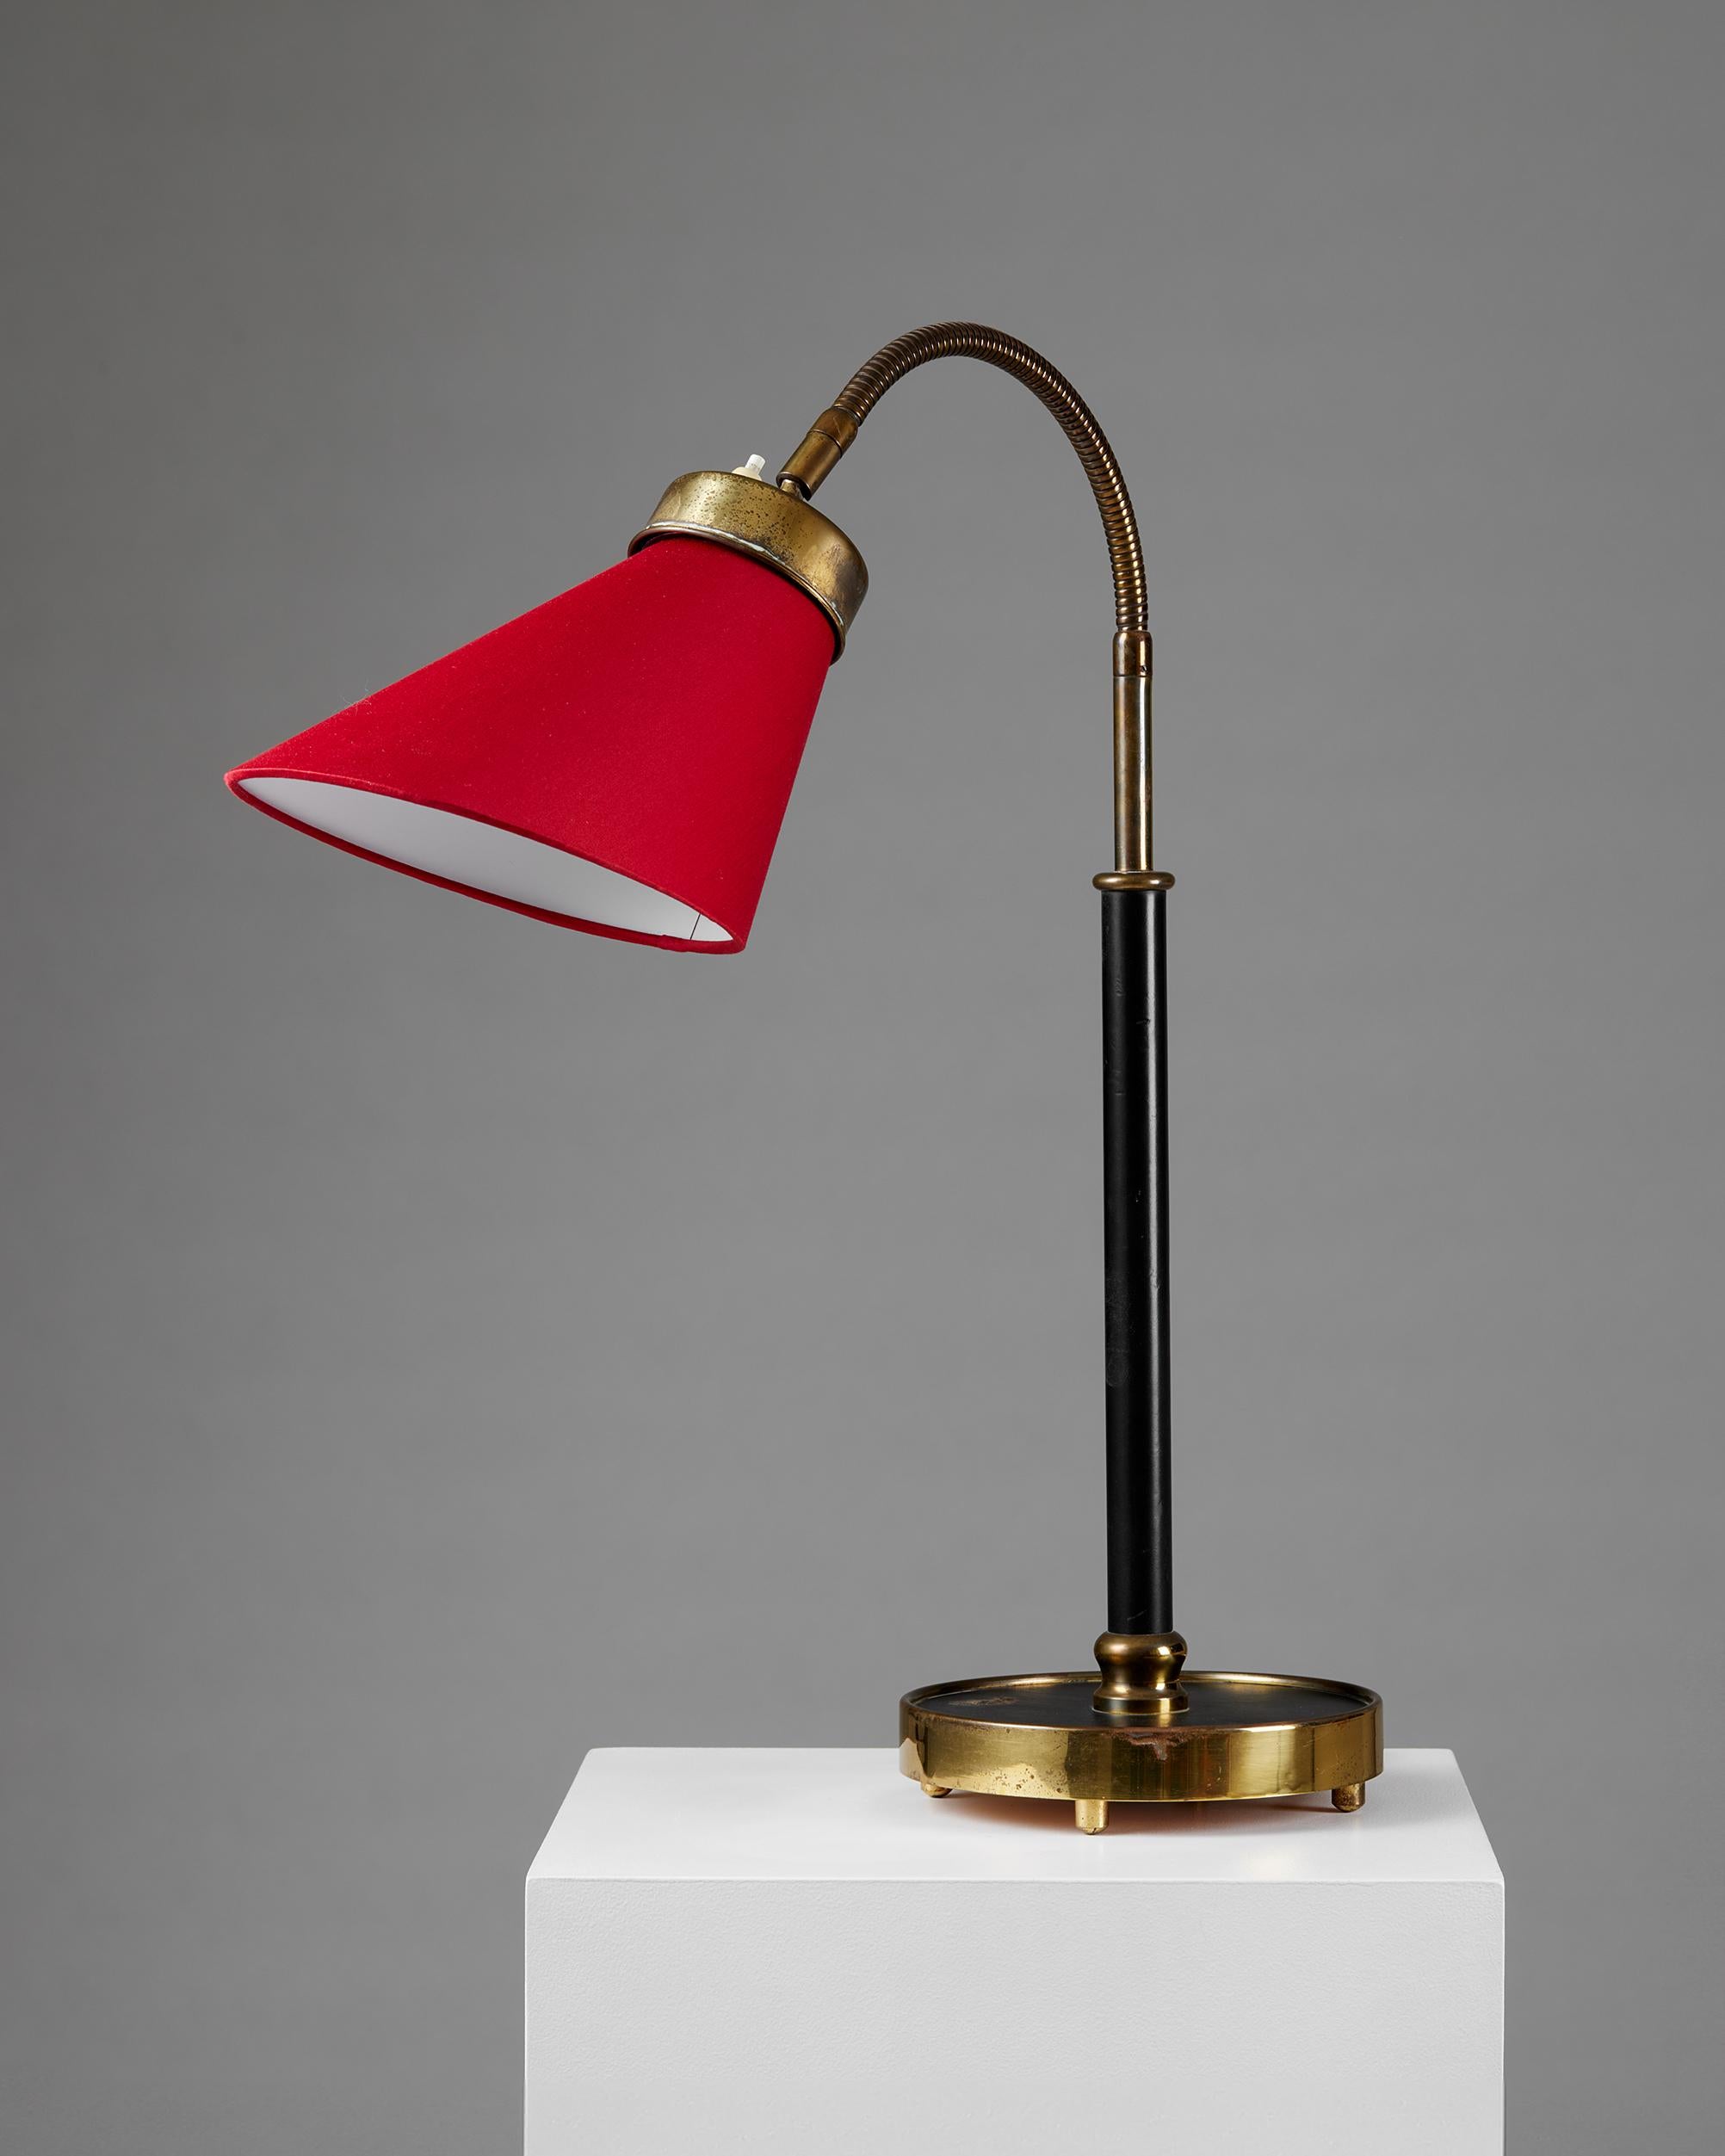 Lampe de table modèle 2434 conçue par Josef Franks pour Svenskt Tenn,
Suède, 1939.

Laiton poli et laqué, tige gainée de cuir et abat-jour en textile.

Estampillé.

Josef Frank était un véritable Européen, mais aussi un pionnier de ce qui allait